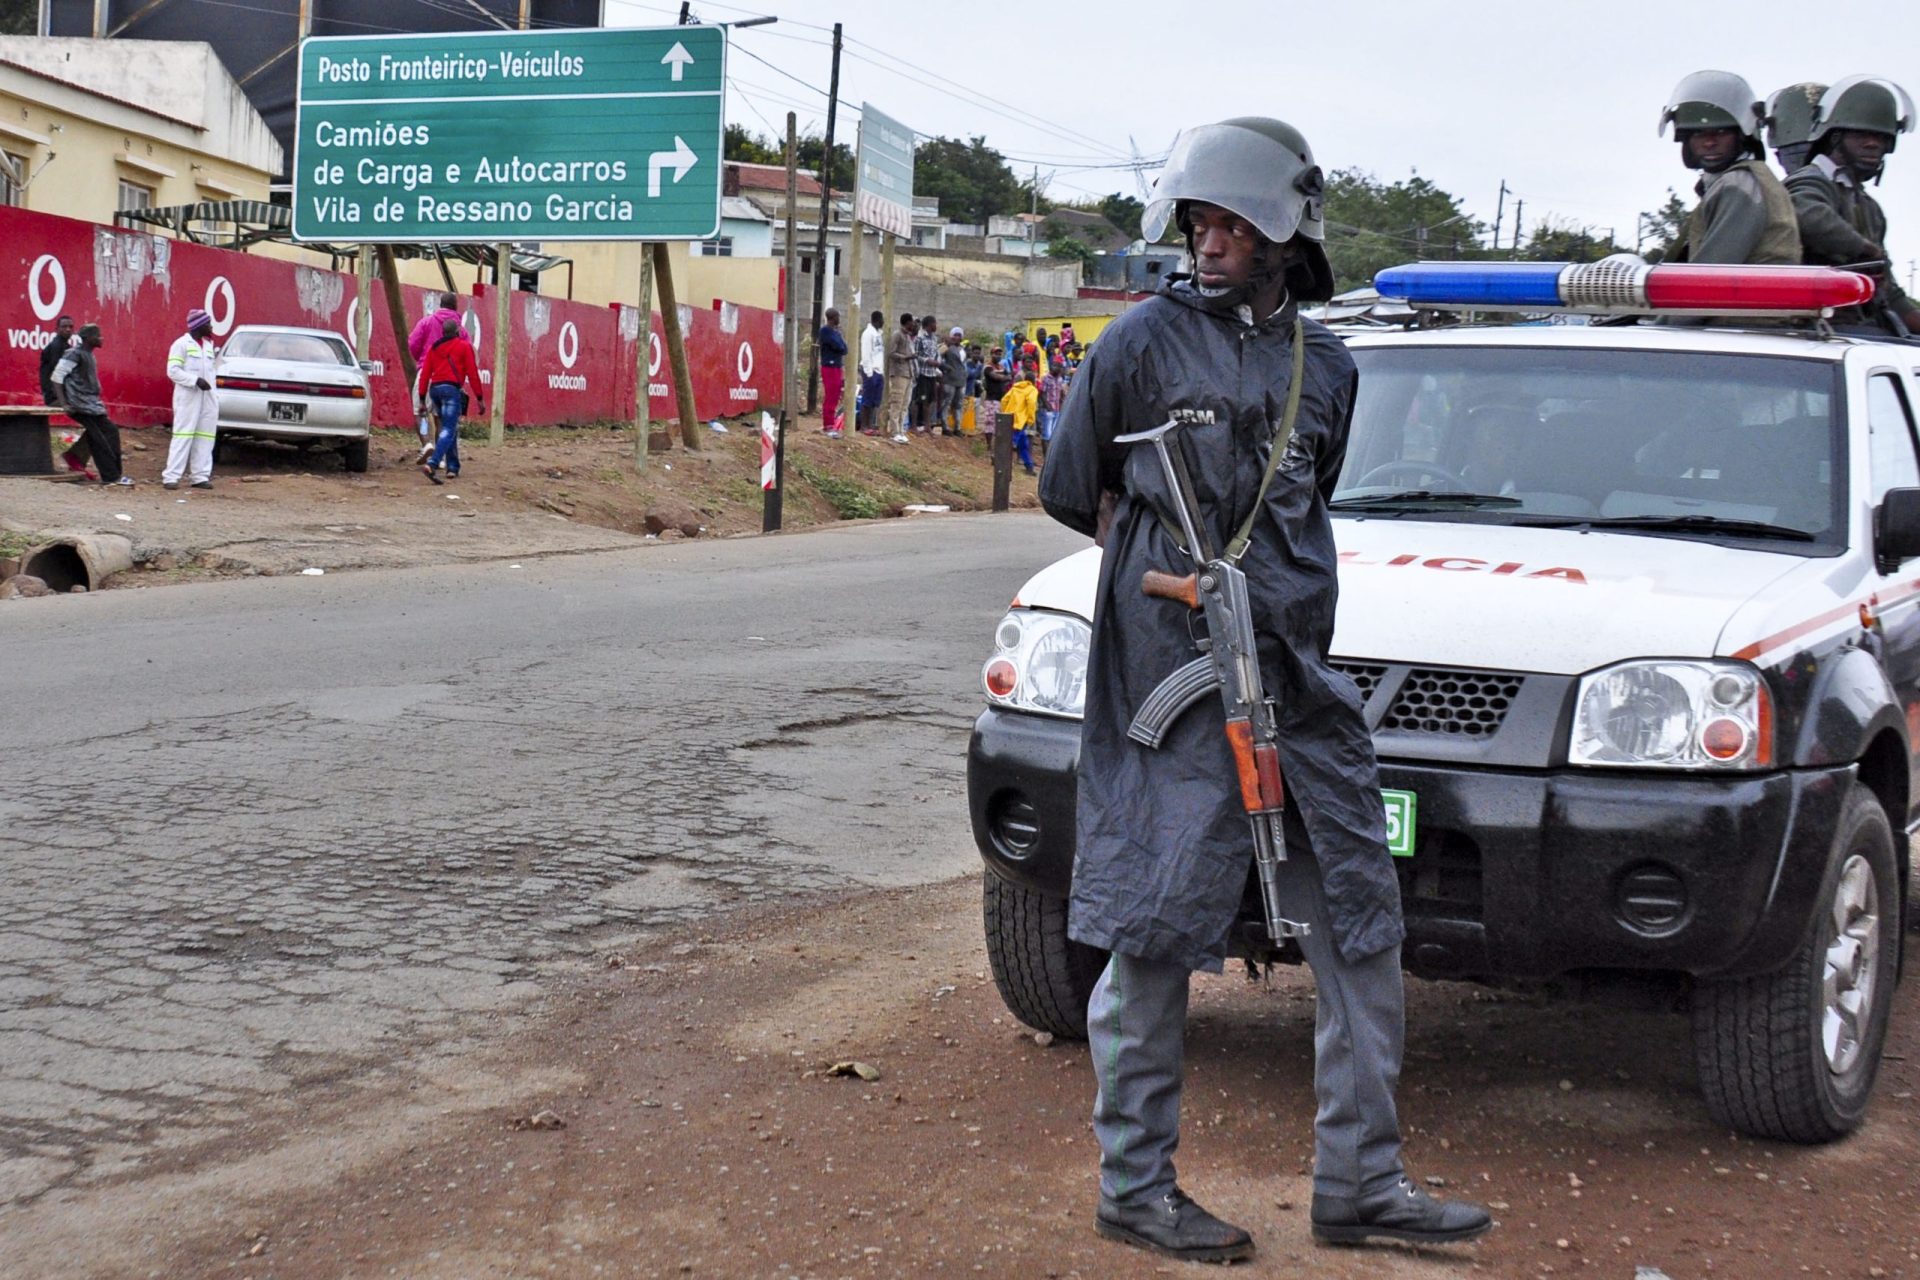 Moçambicano morto no fim-de-semana em ataque xenófobo em Joanesburgo